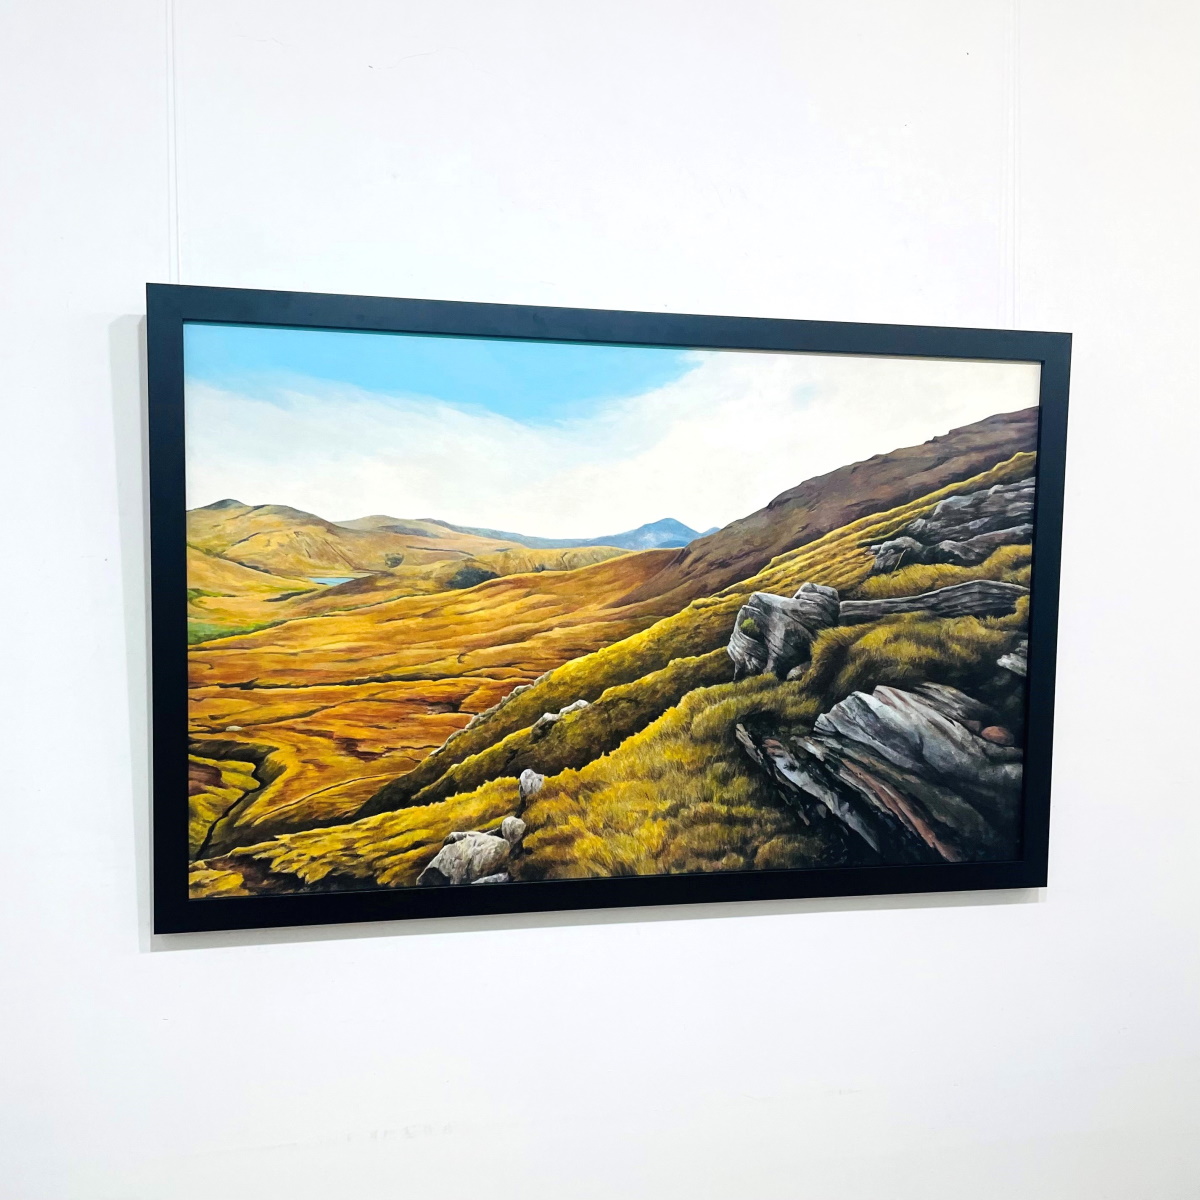 'Trossachs View' by artist Gavin Weir